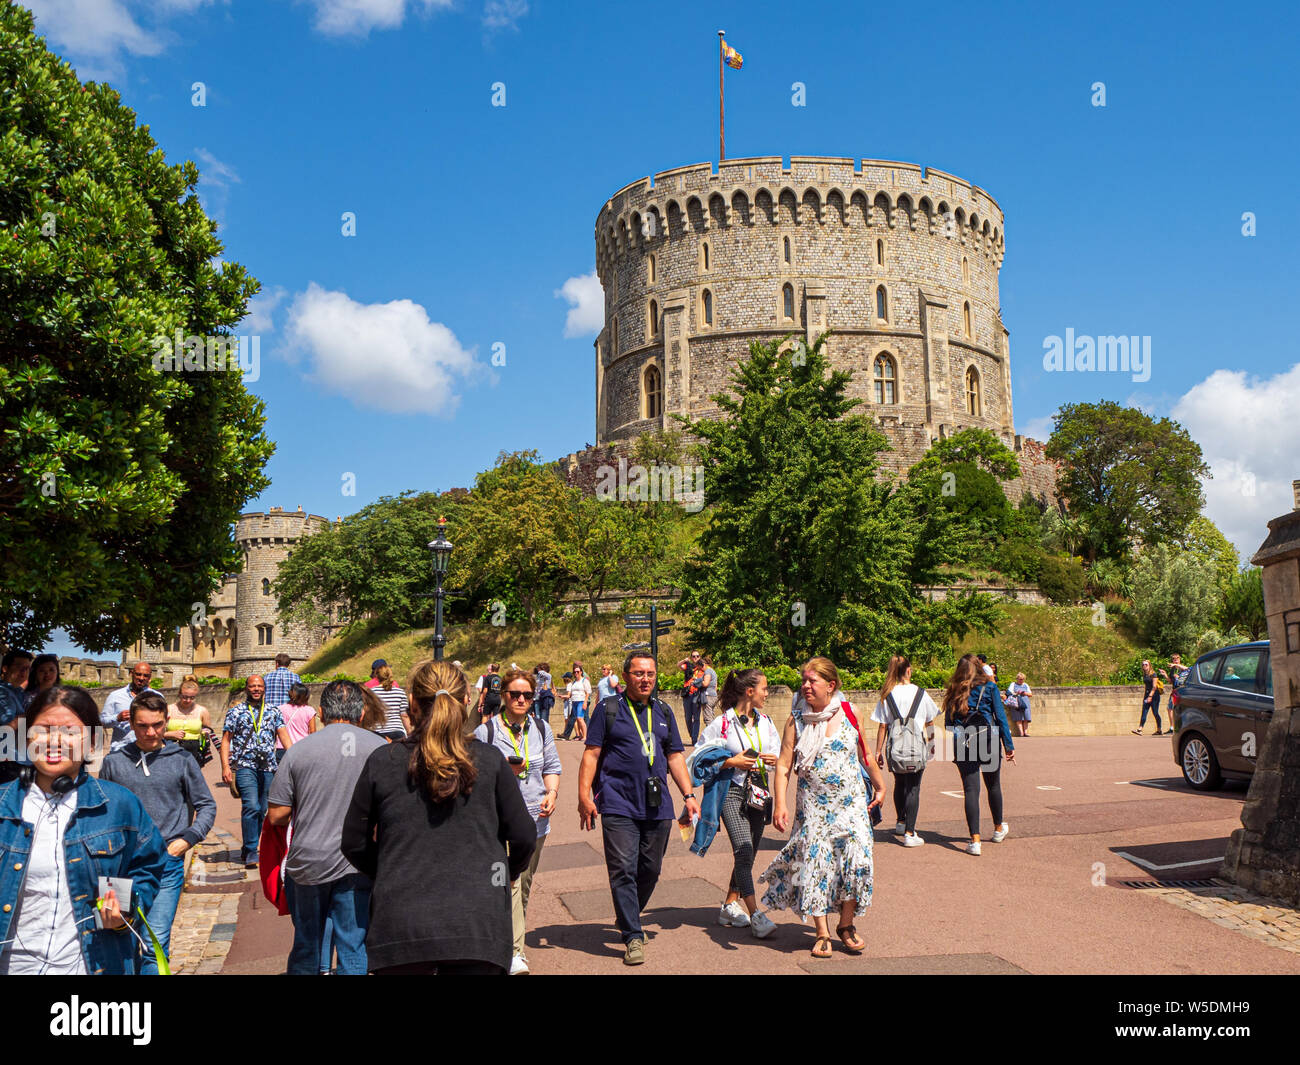 La folla di turisti il floccaggio di sé e le attrazioni della storica residenza reale del Castello di Windsor in Inghilterra su una calda e soleggiata giornata d'estate Foto Stock